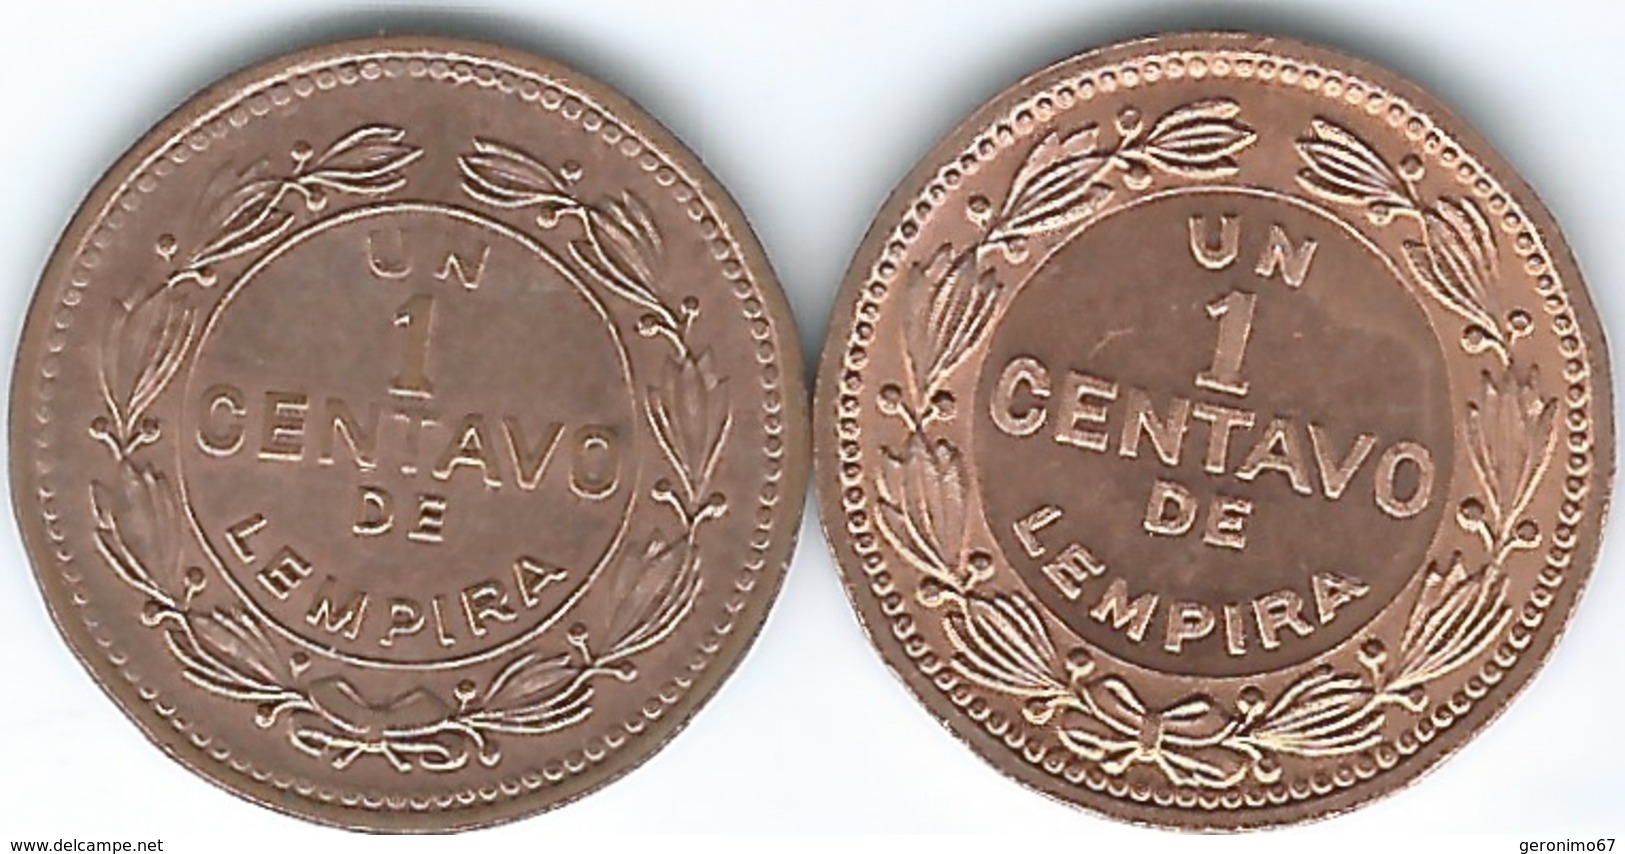 Honduras - 1 Centavo - 1988 (KM77b) 1992 (KM77a) - Honduras